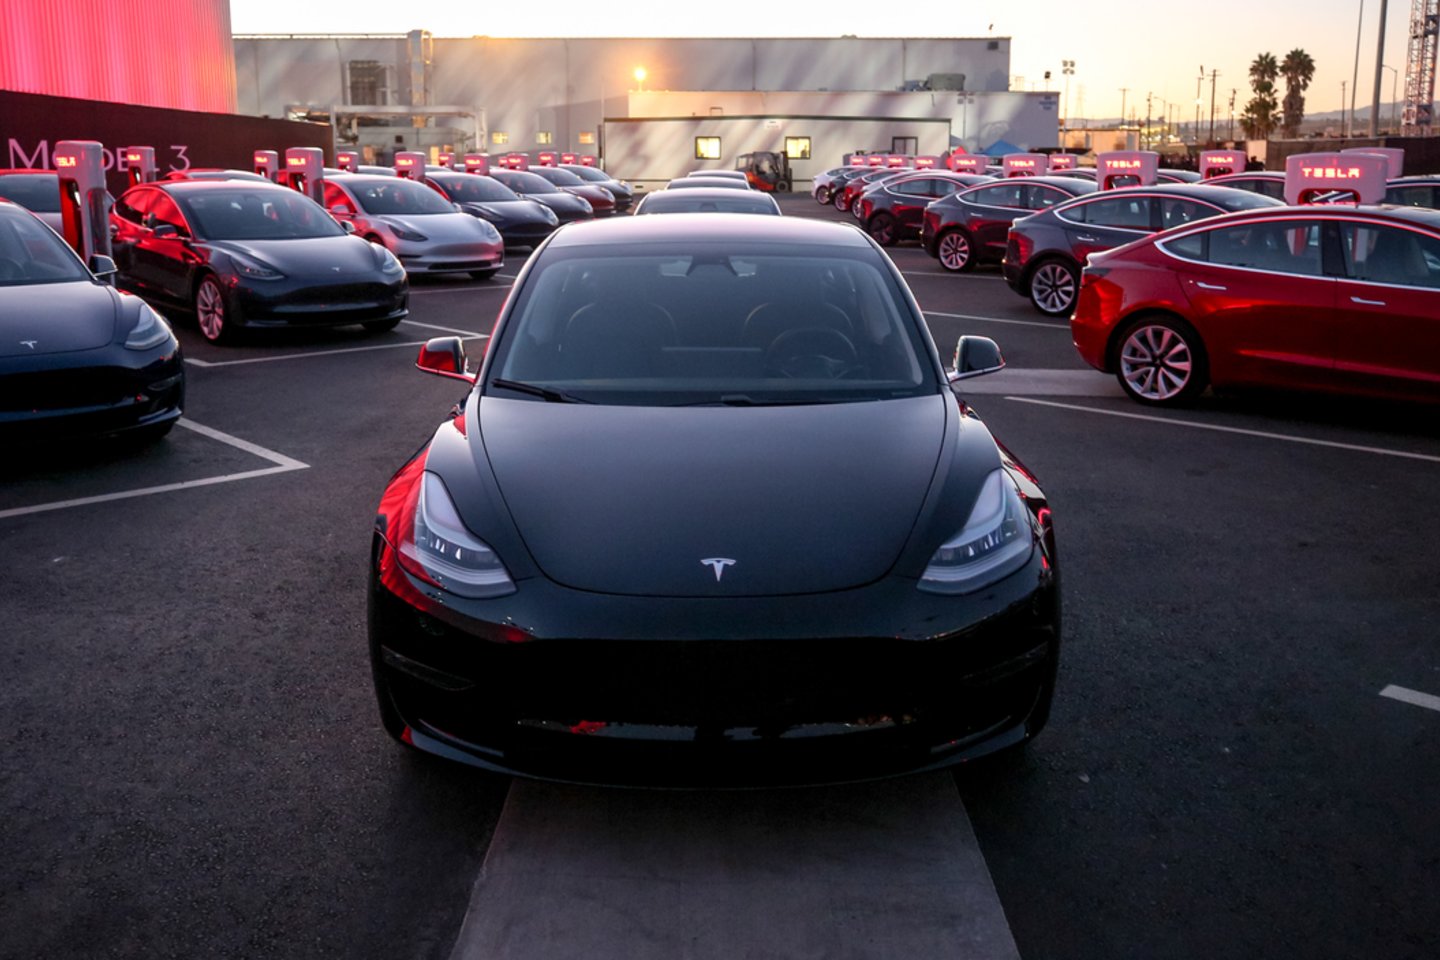  Jei elektromobilius būtina remontuoti, „Tesla“ klientams Norvegijoje su jais tenka ilgam atsisveikinti.<br>Gamintojo nuotr.